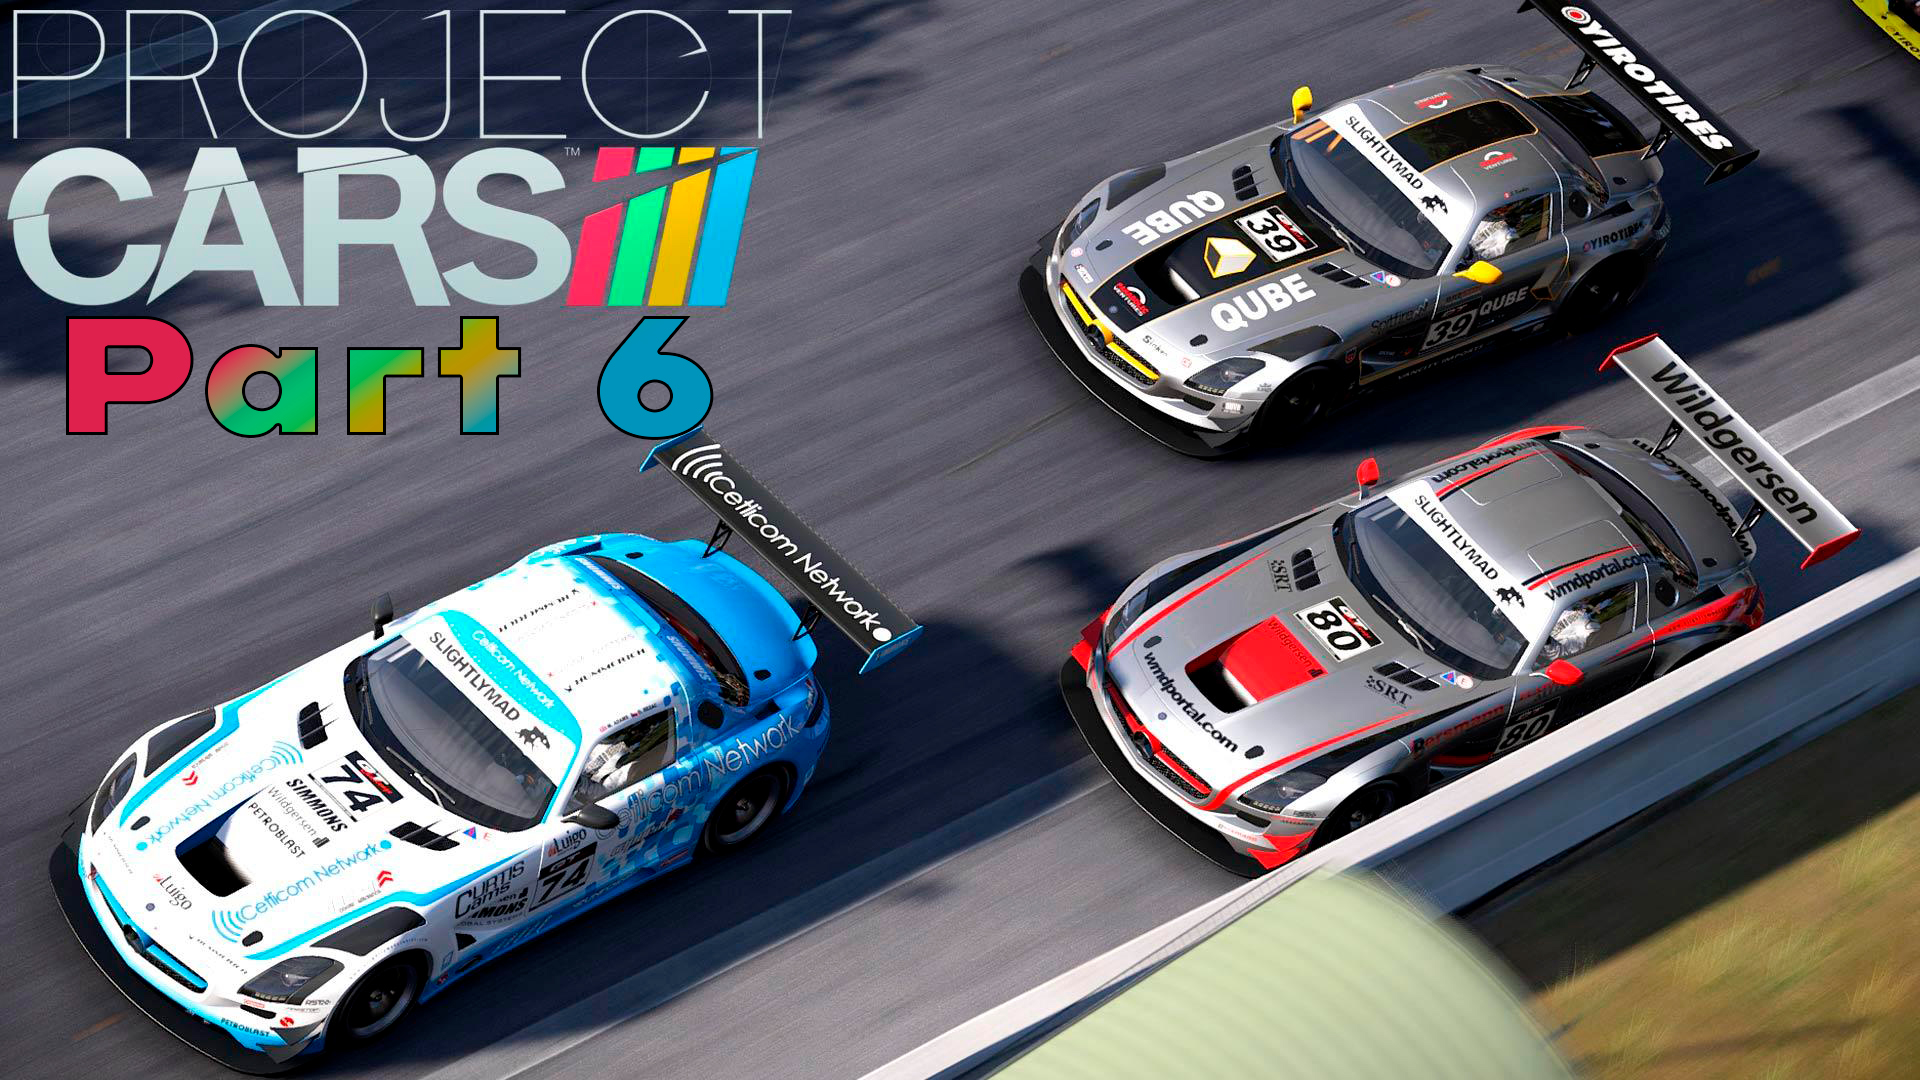 Прохождение Project CARS (Часть 6) Картинг #projectcars #SimRacing  #gametour  #2015 #karting